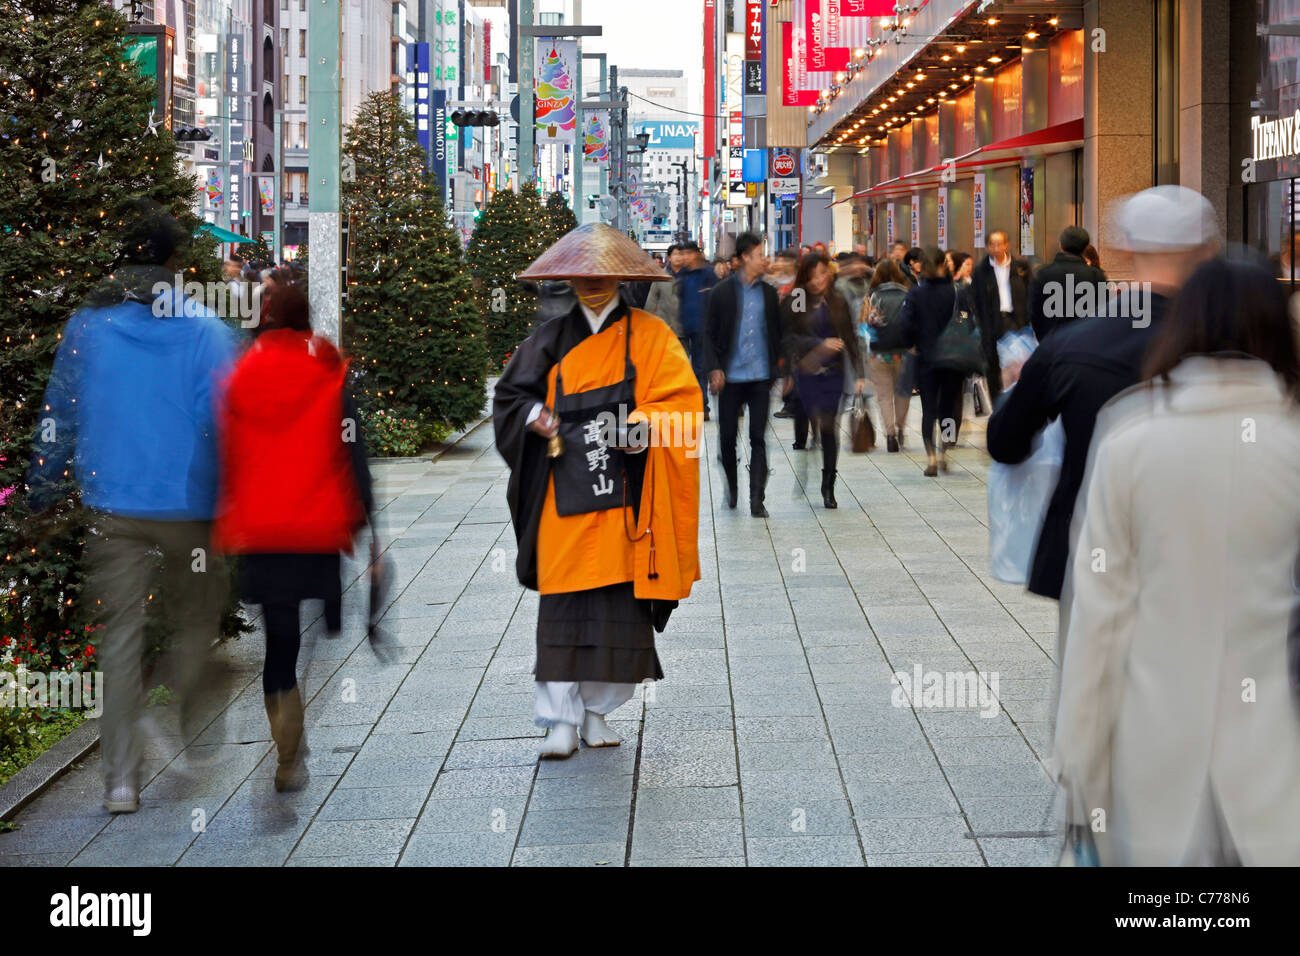 L'Asie, Japon, Honshu, Tokyo, Ginza, moine shintoïste en costume traditionnel la collecte de l'Aumône (dons) Banque D'Images